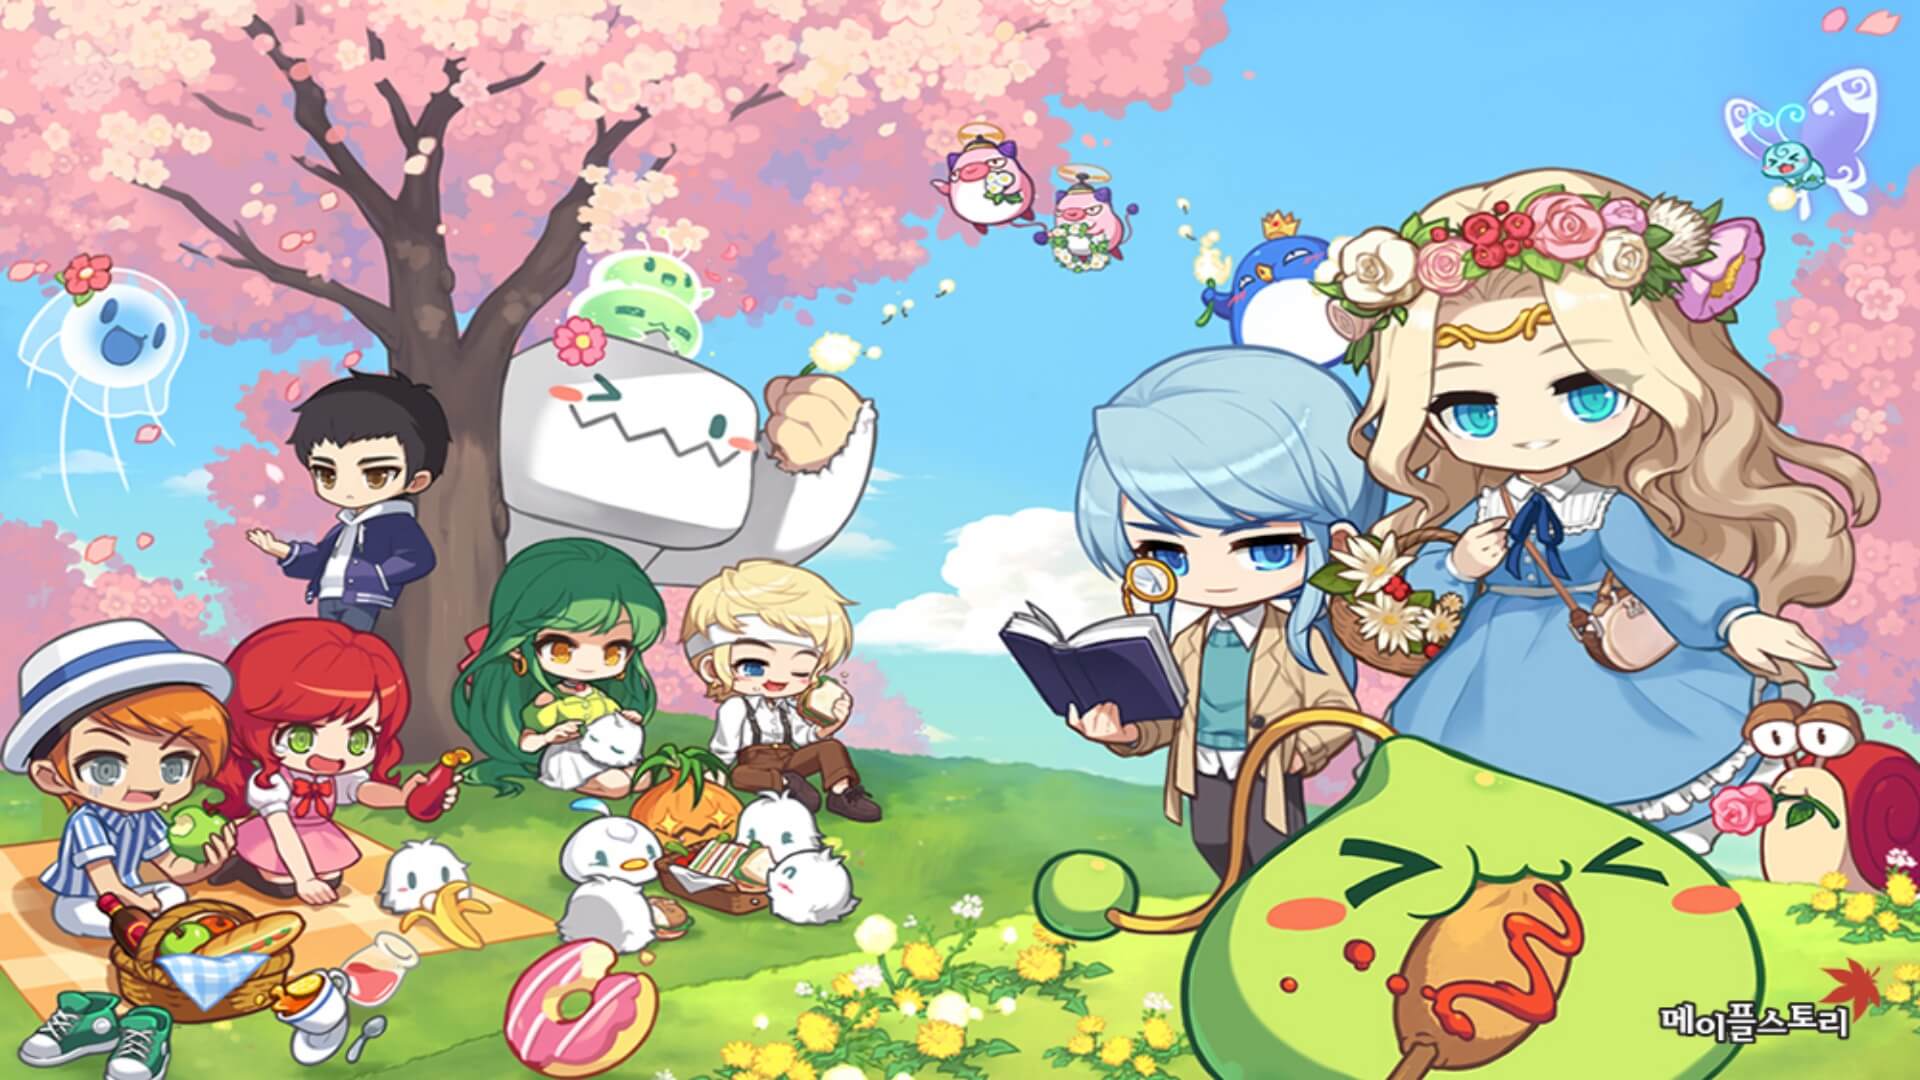 메이플스토리 포스터 벚꽃 동산에 7명의 캐릭터와 귀여운 몬스터들